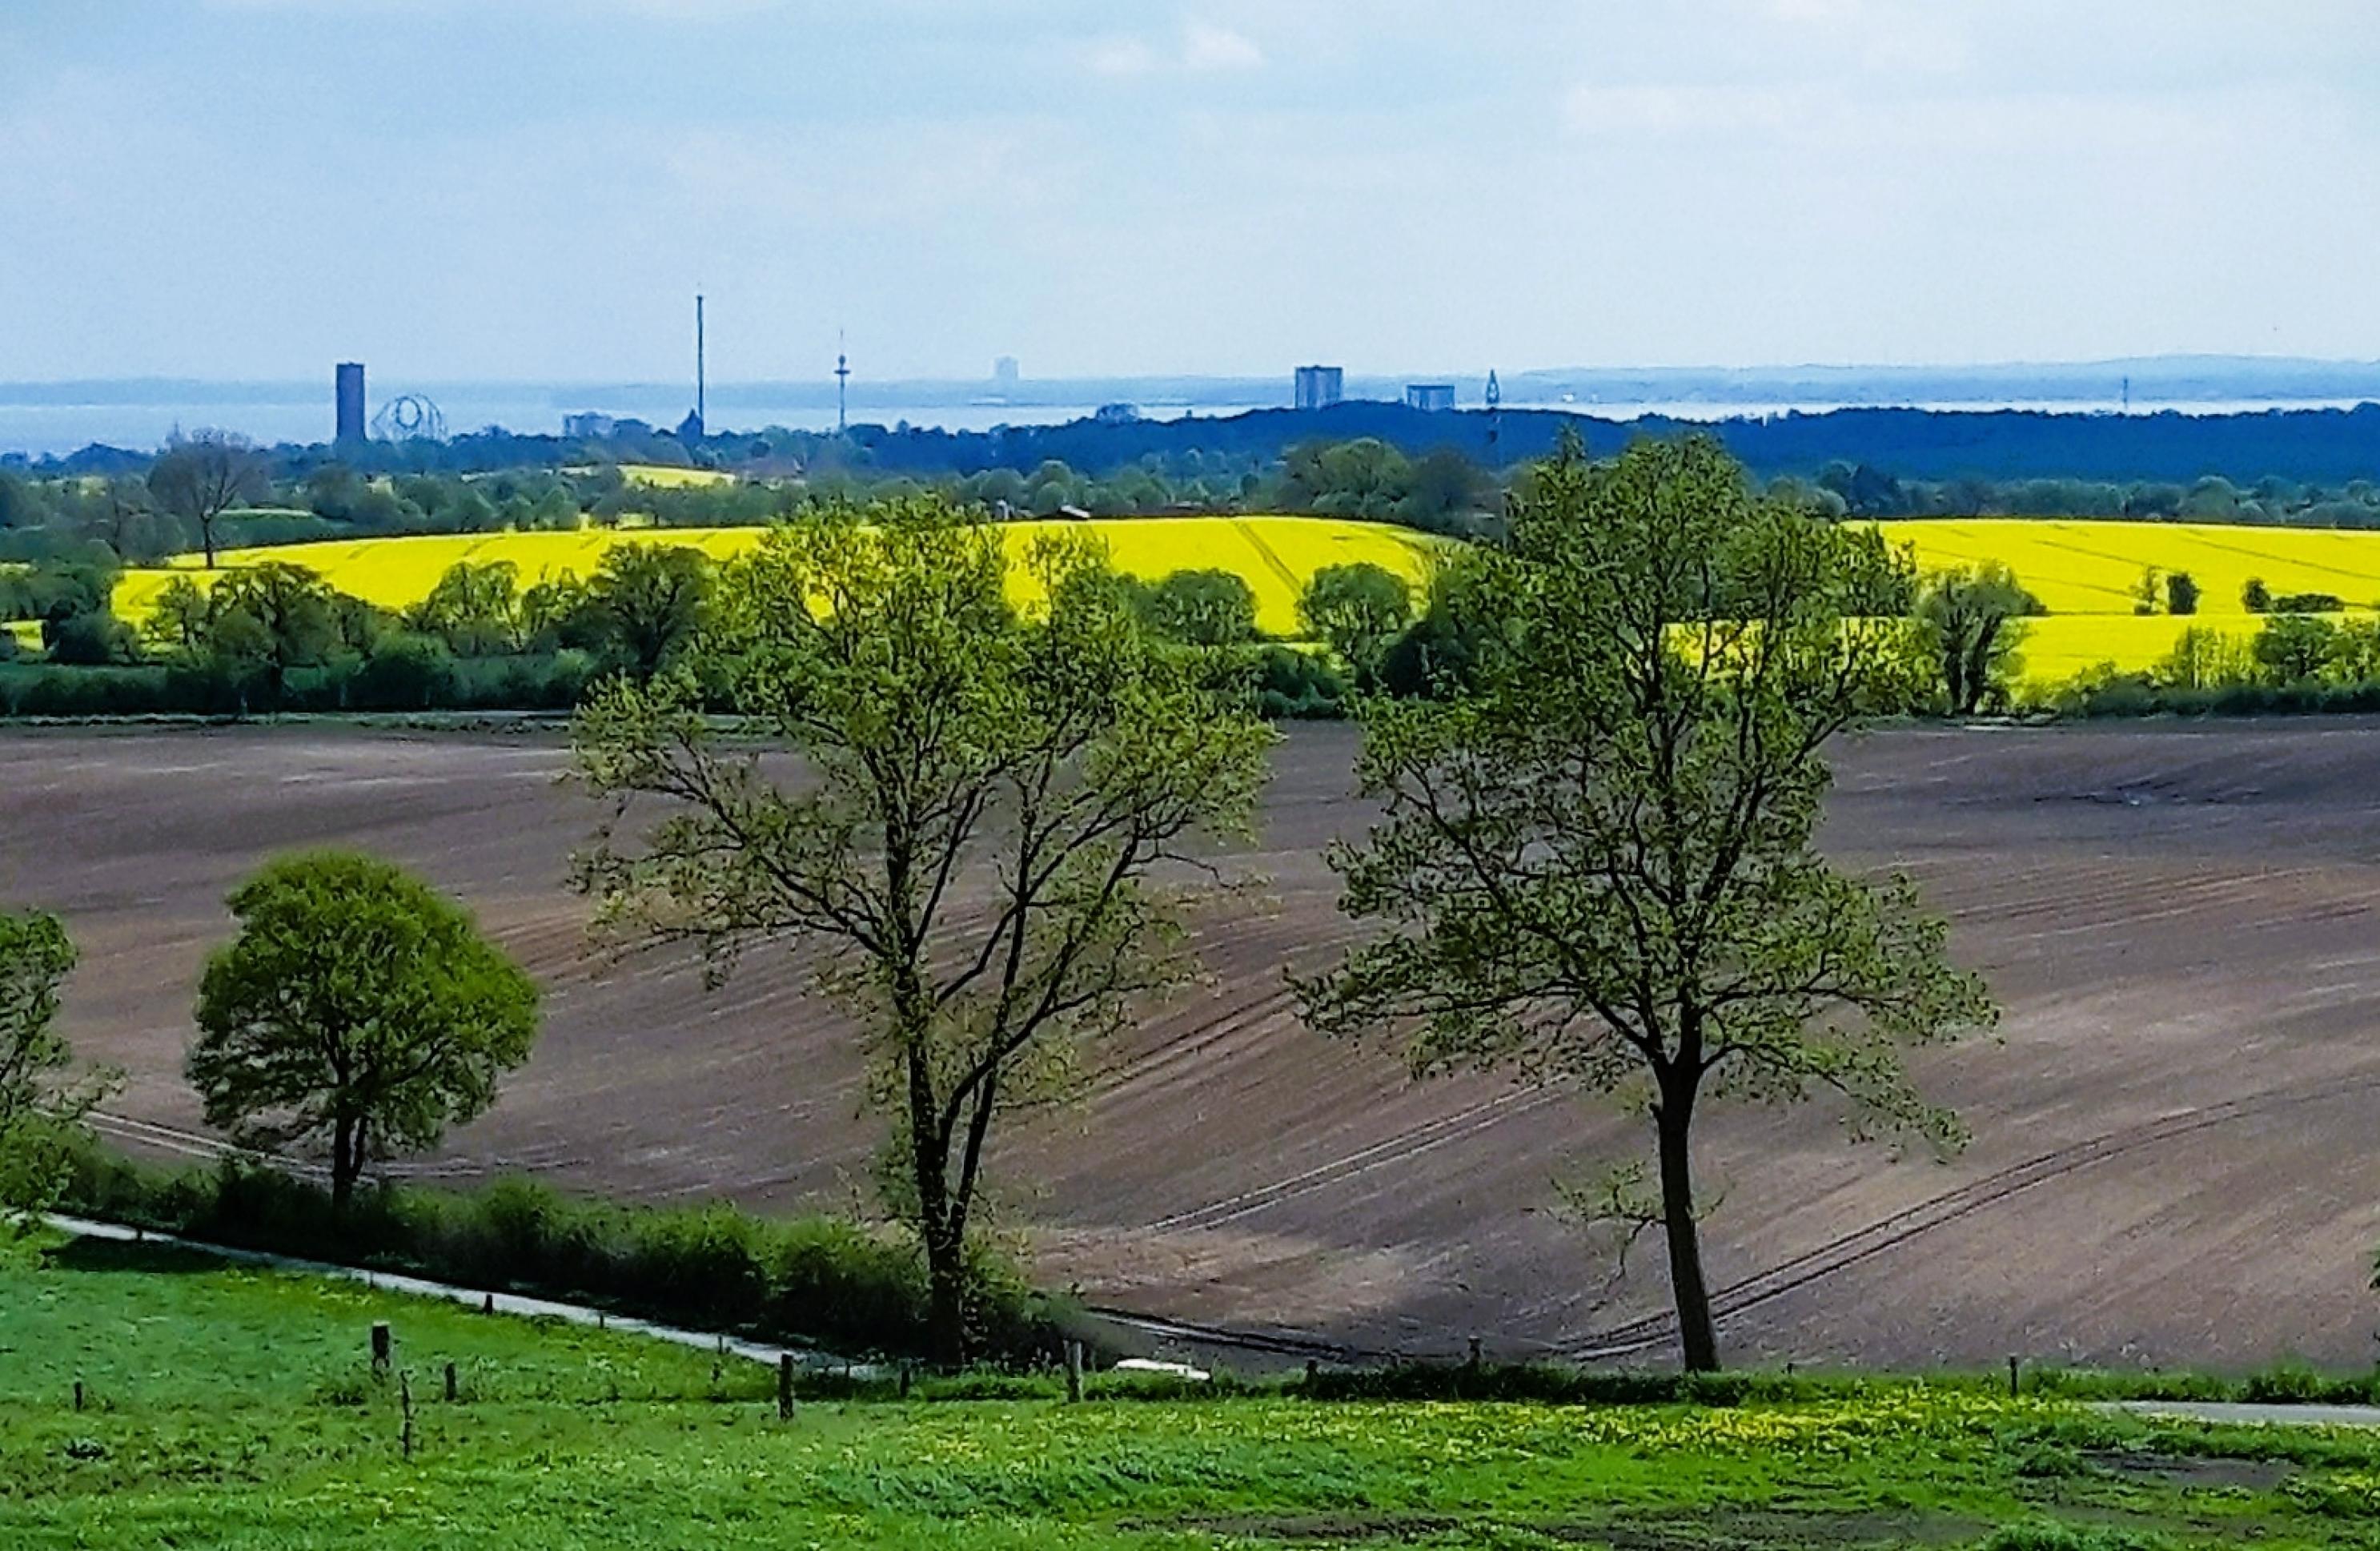 Blick übers Hügelland mit Weiden, Bäumen und gelben Rapsfeldern zur Küstenlinie, vor der ein von einigen Hochhäusern überragter Waldgürtel liegt.